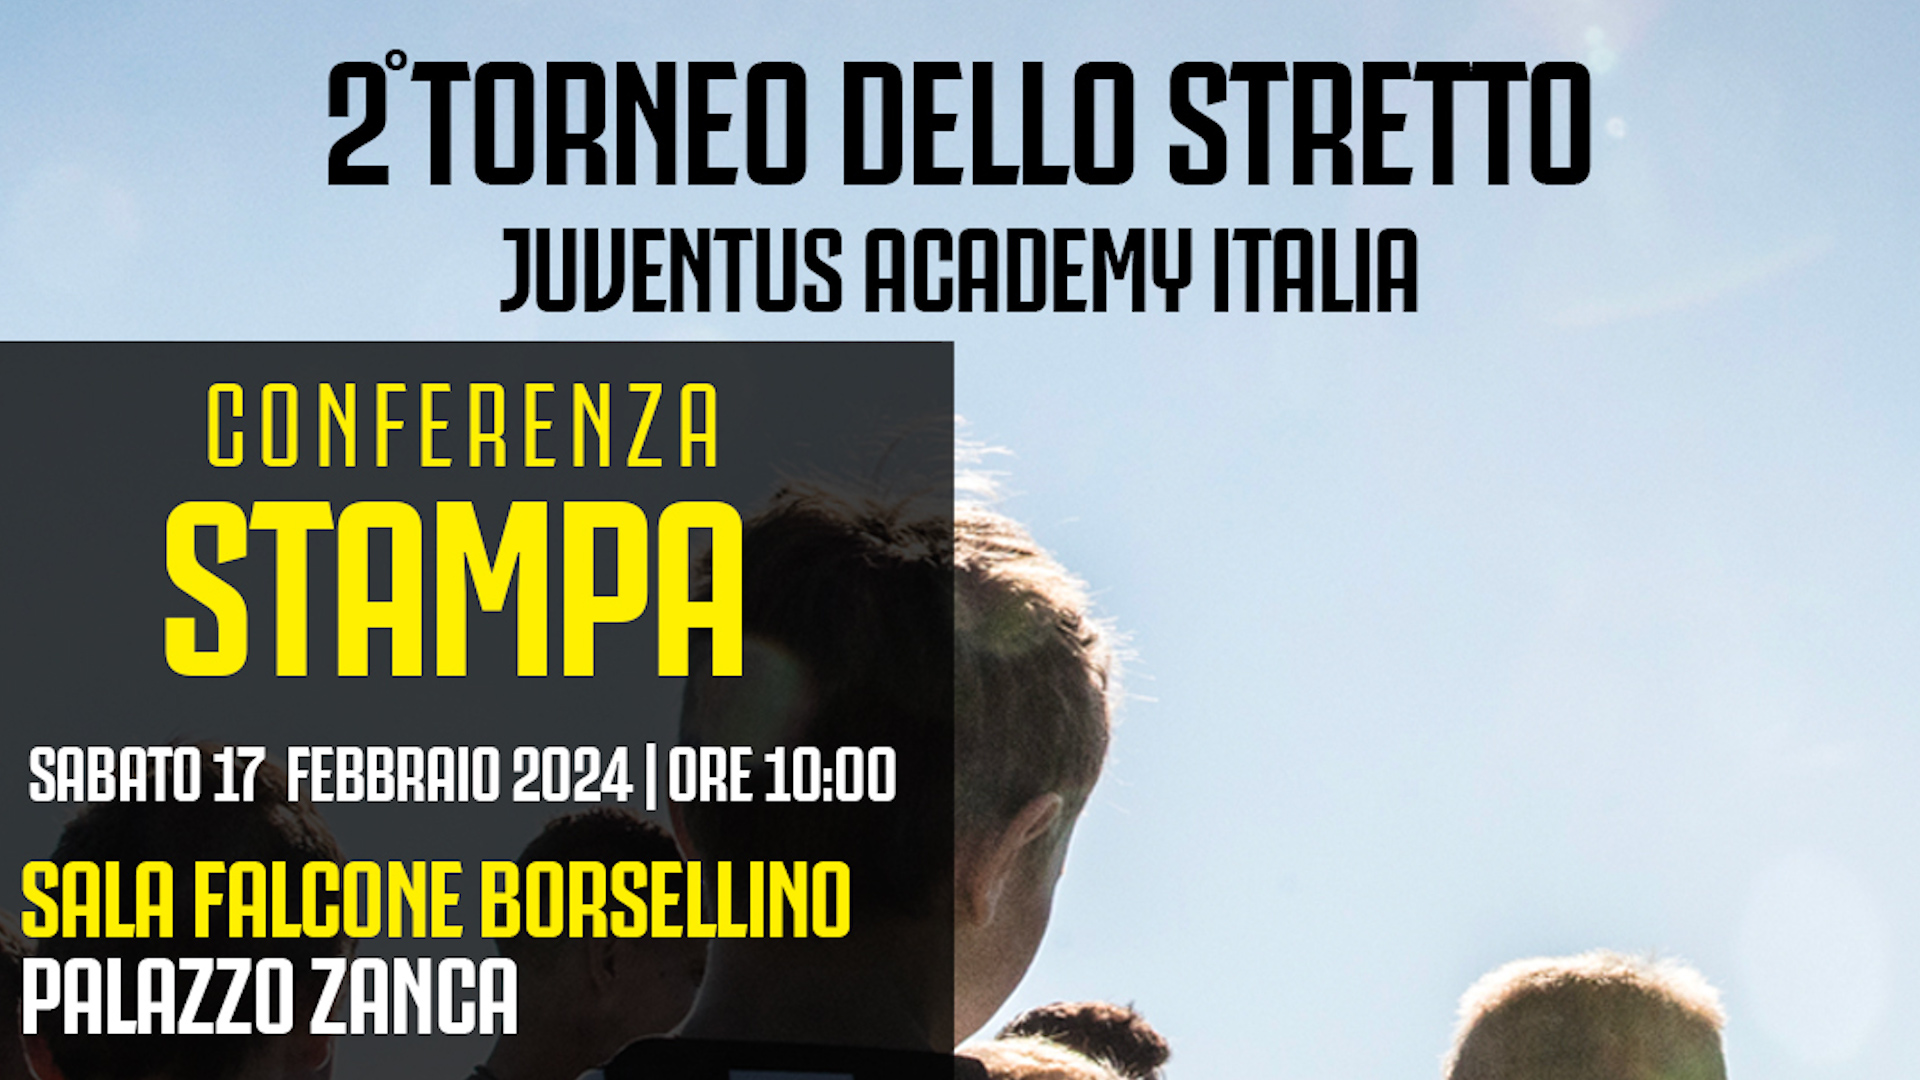 Torneo dello Stretto Academy Italia: sabato 17 febbraio conferenza stampa a Palazzo Zanca